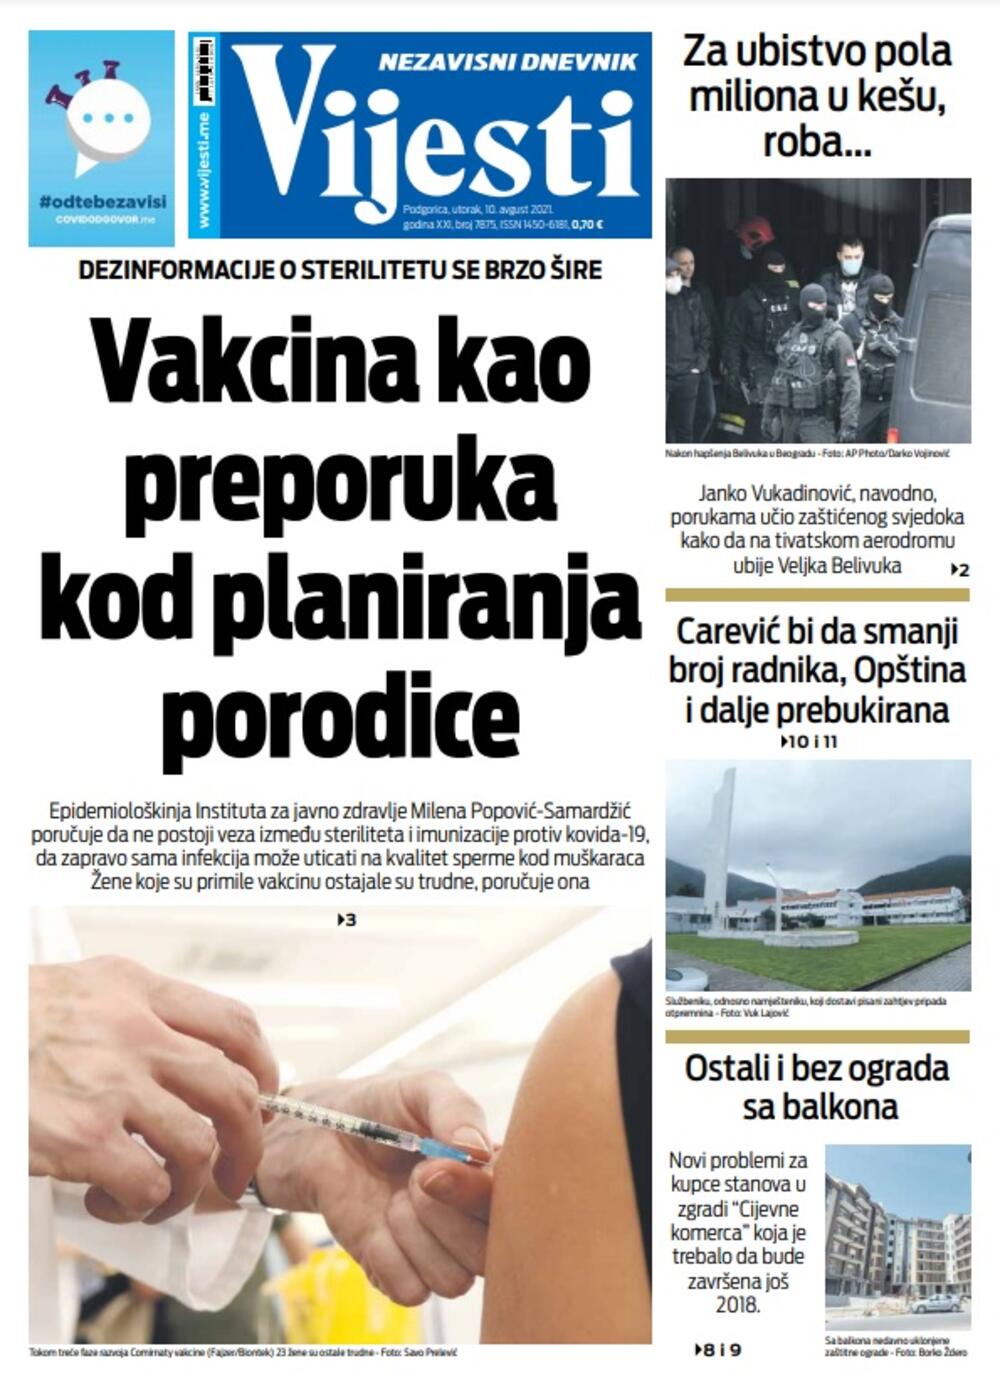 Naslovna strana "Vijesti" za 10. avgust 2021., Foto: Vijesti